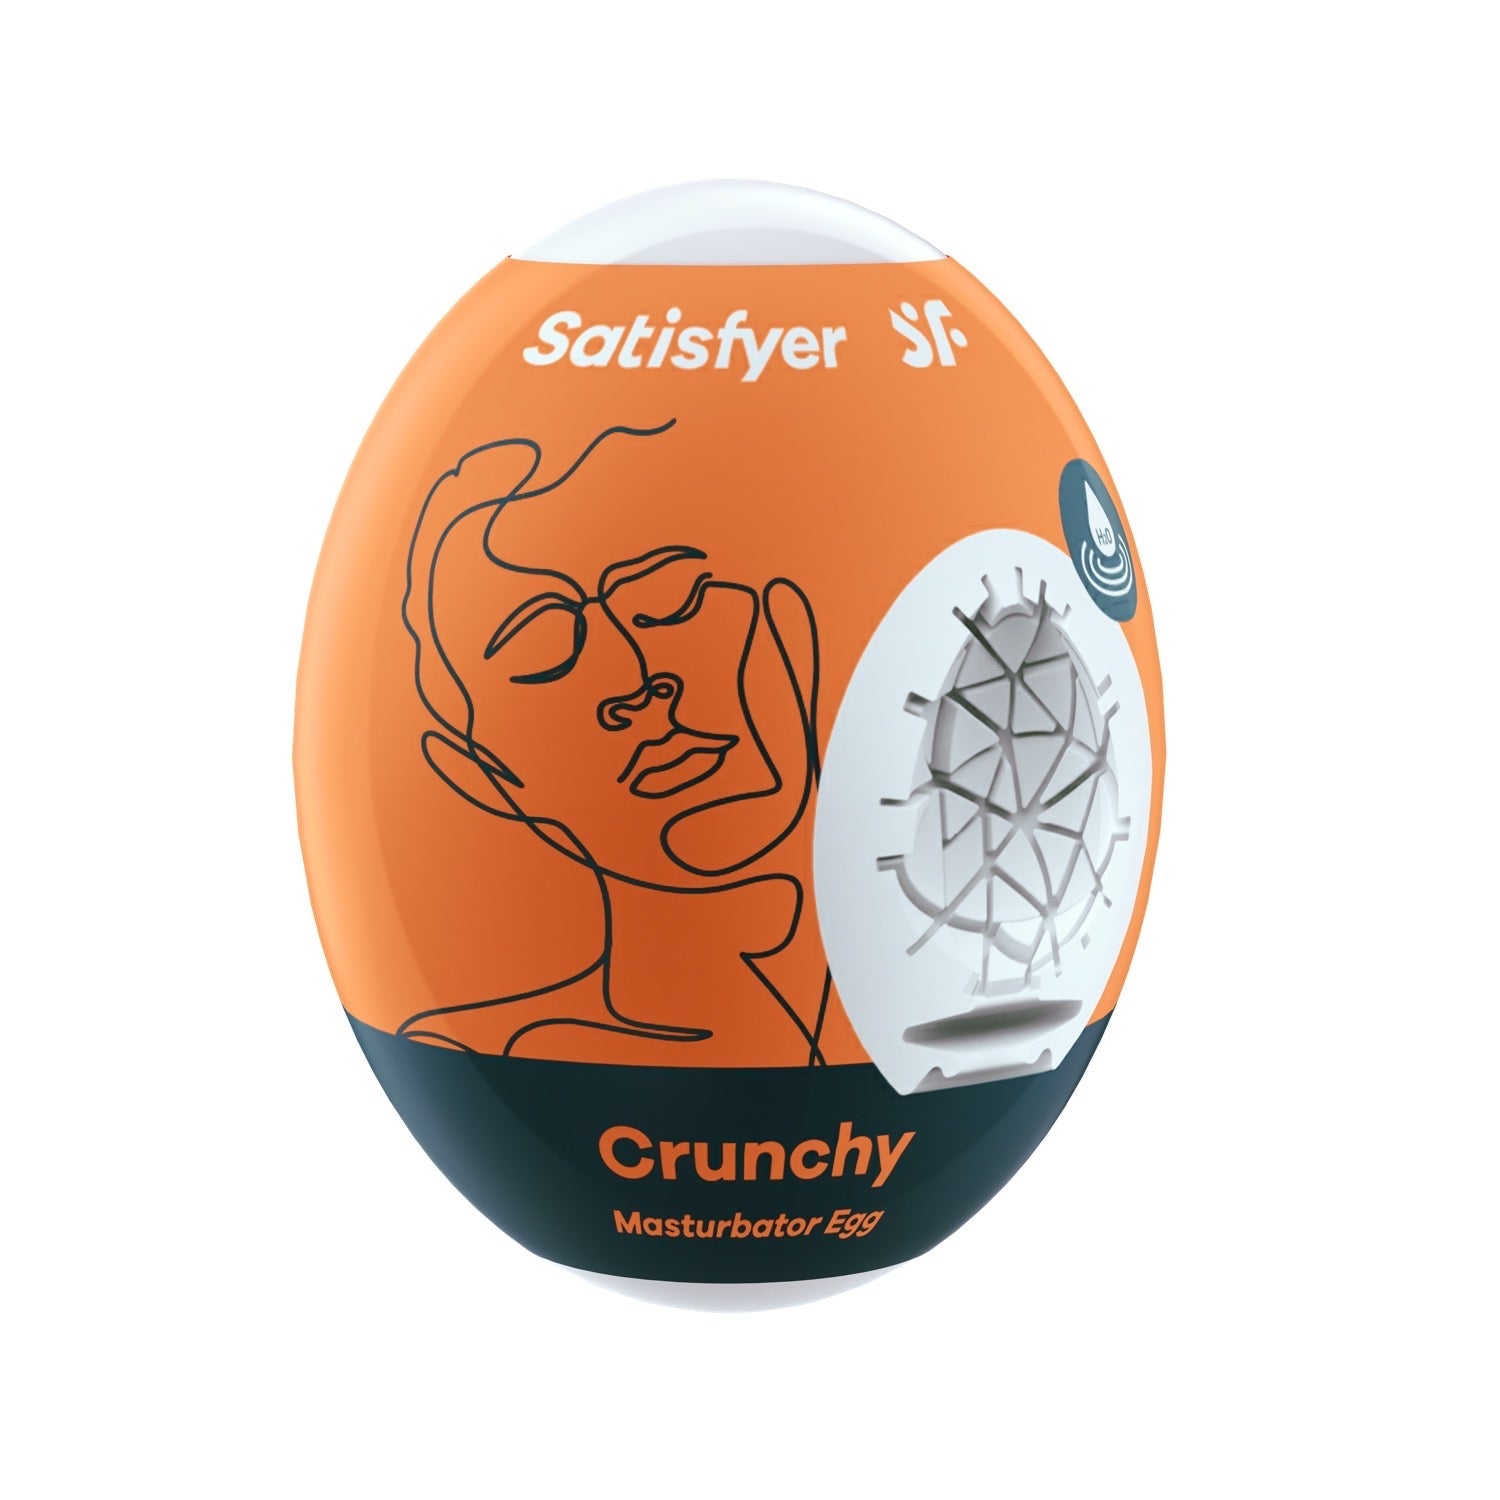 Satisfyer Masturbator Egg - Crunchy - White by Satisfyer